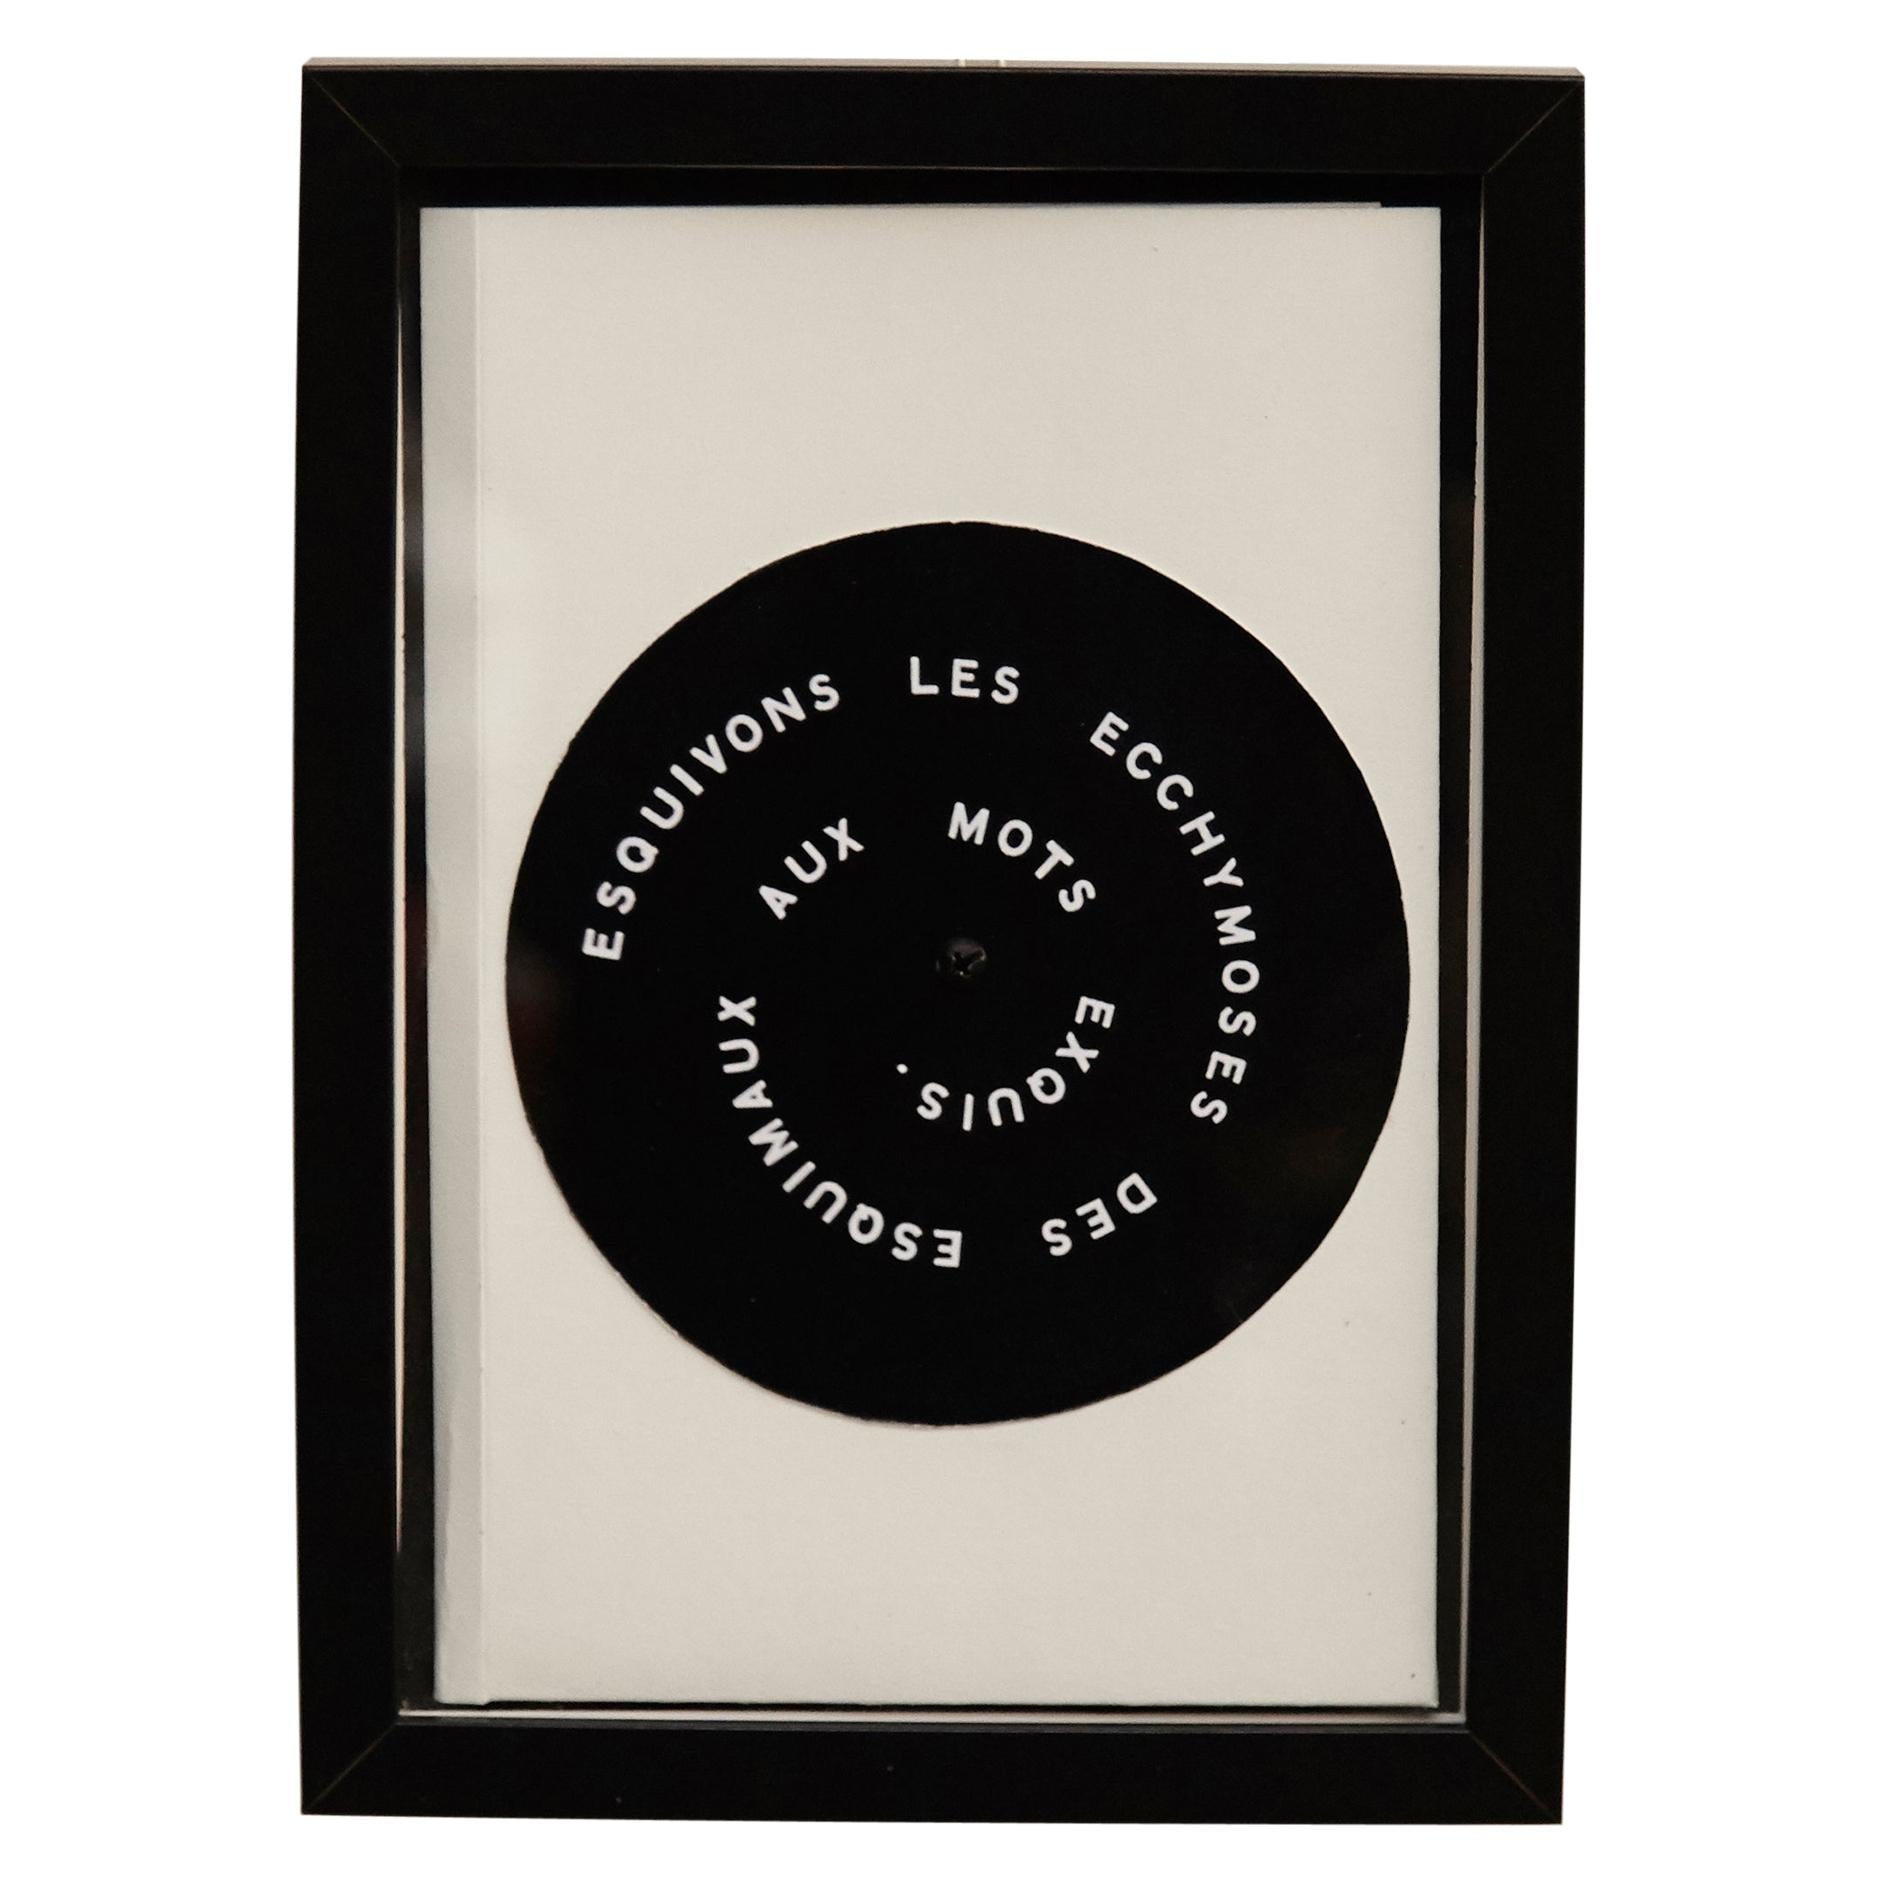 Marcel Duchamp 'Esquivons Les Ecchymoses des Esquimaux aux Mots Exquis' 1968